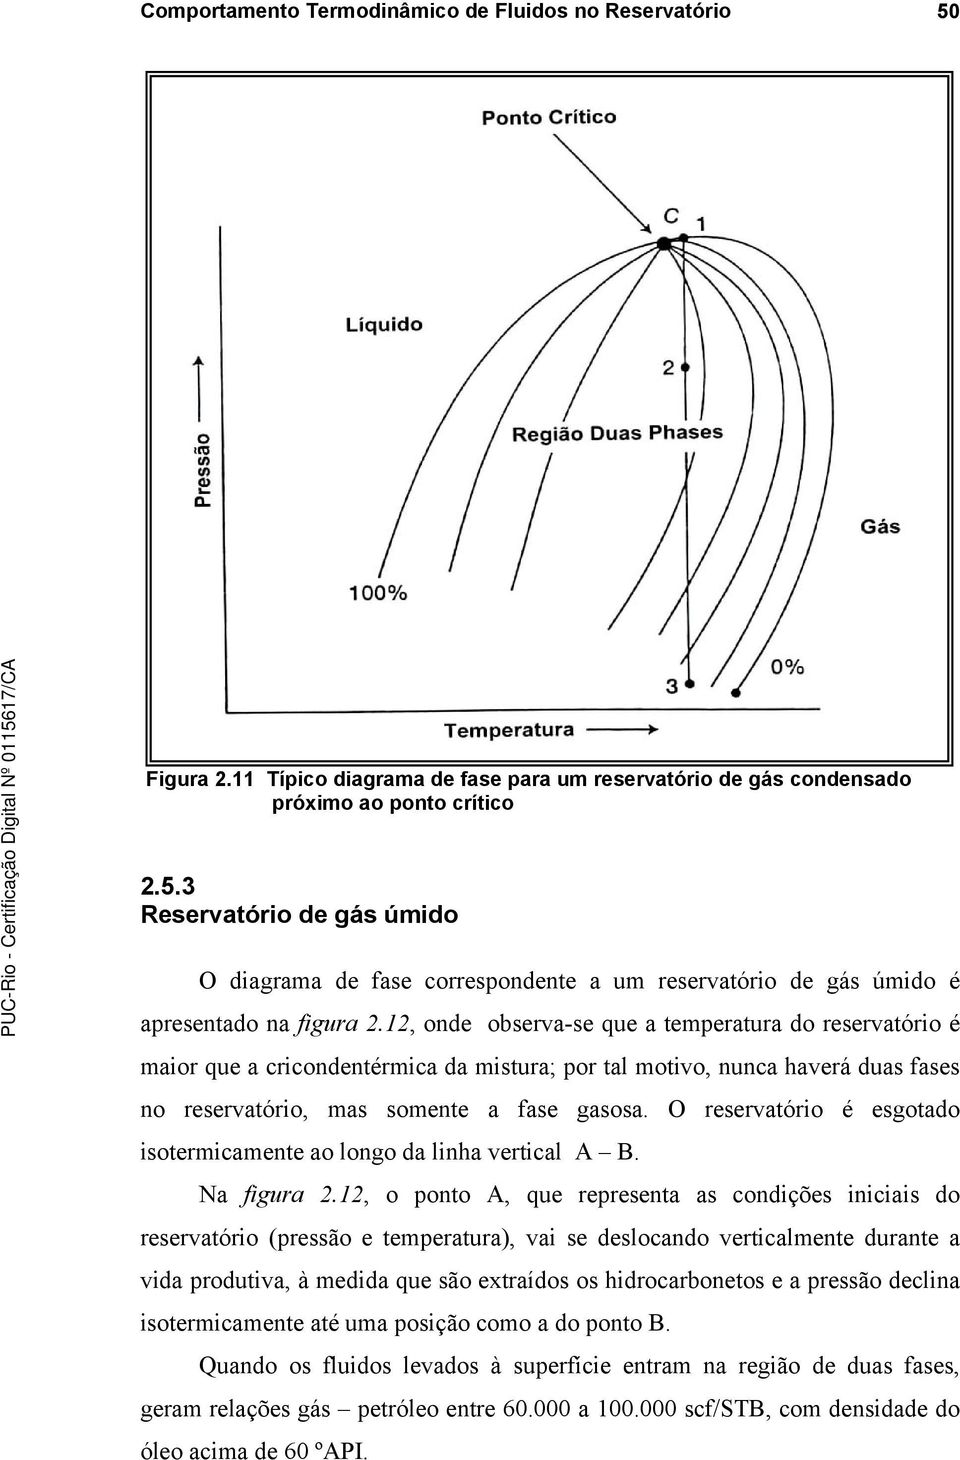 O reservatório é esgotado isotermicamente ao longo da linha vertical A B. Na figura 2.